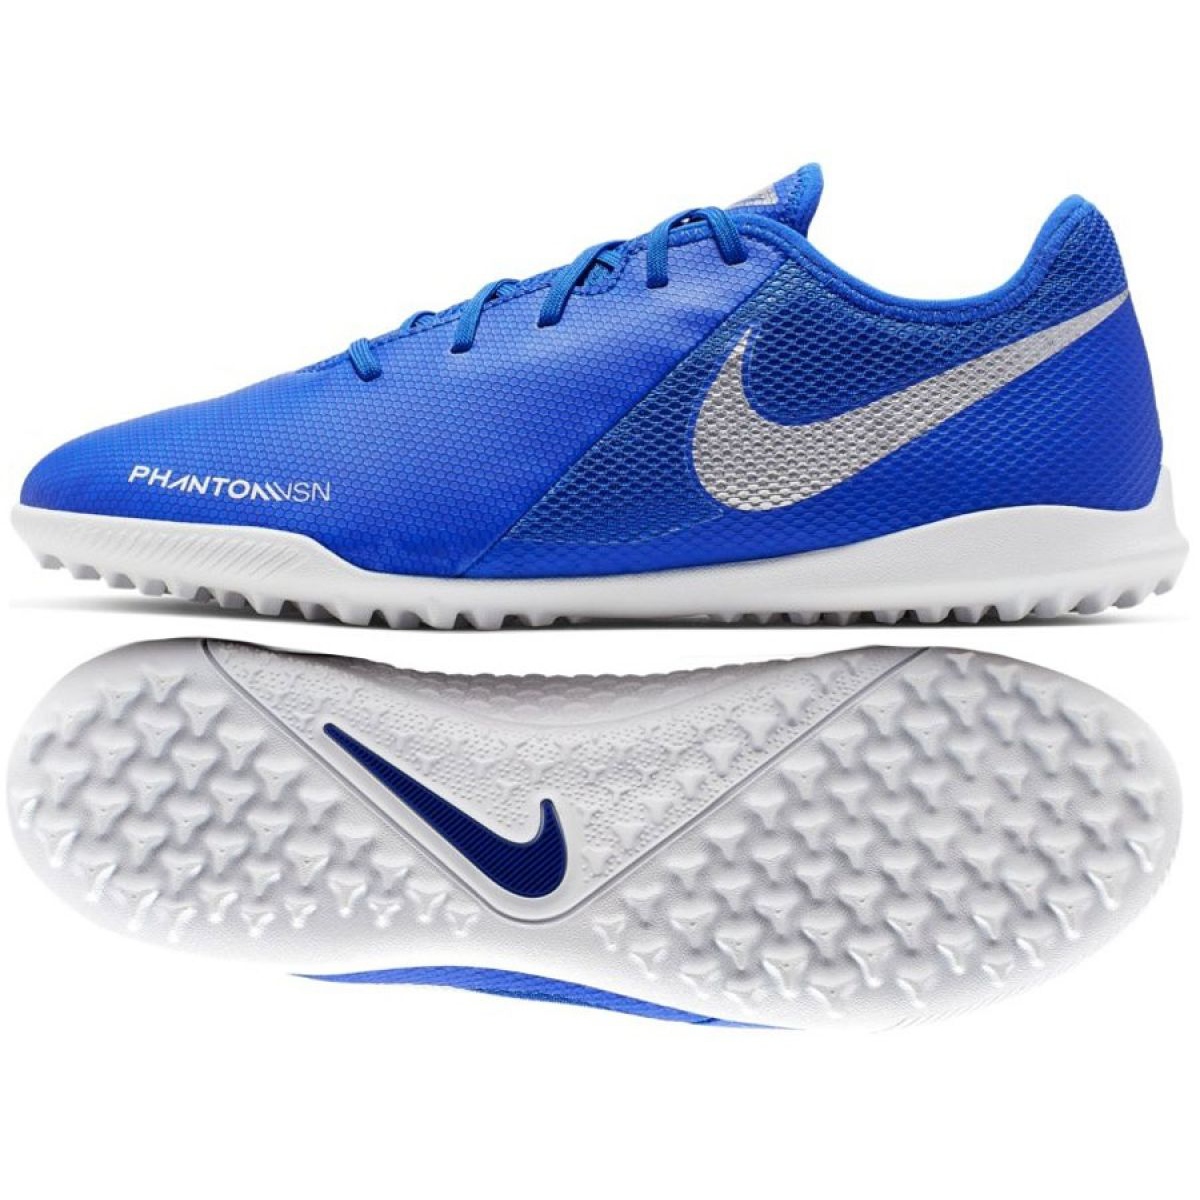 Buty piłkarskie Nike Phantom Vsn Academy Tf M AO3223-410 niebieskie